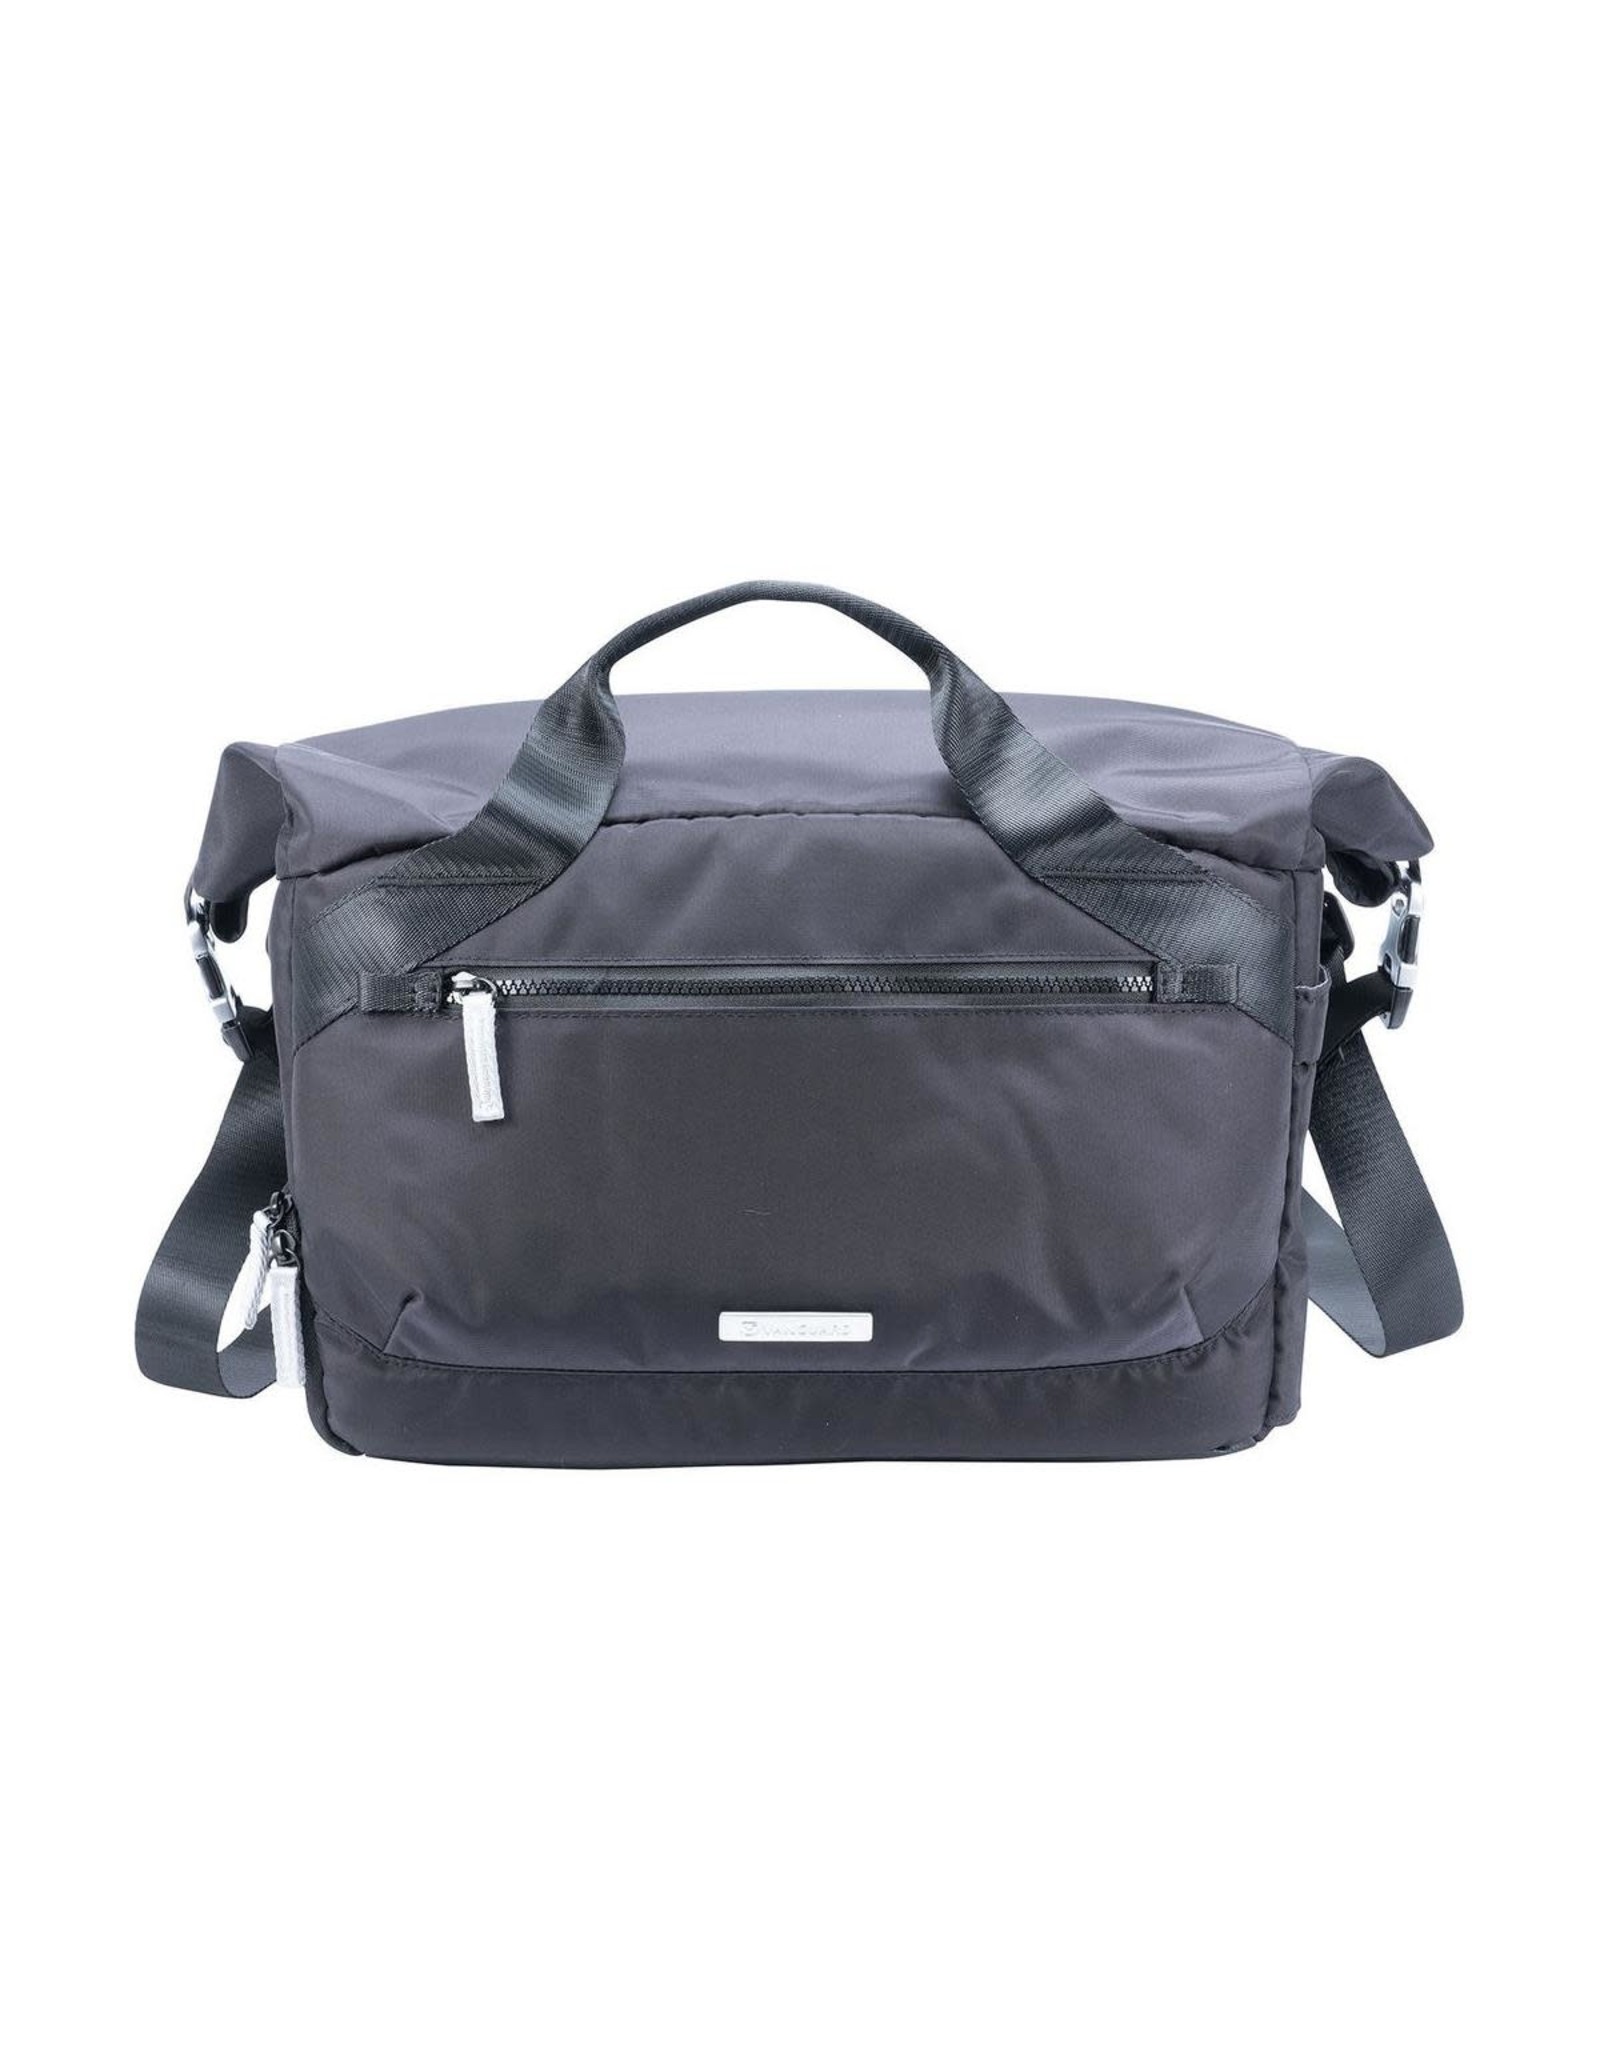 Vanguard Vanguard VEO FLEX 35M Slim Rolltop Shoulder Bag (Choose Color)